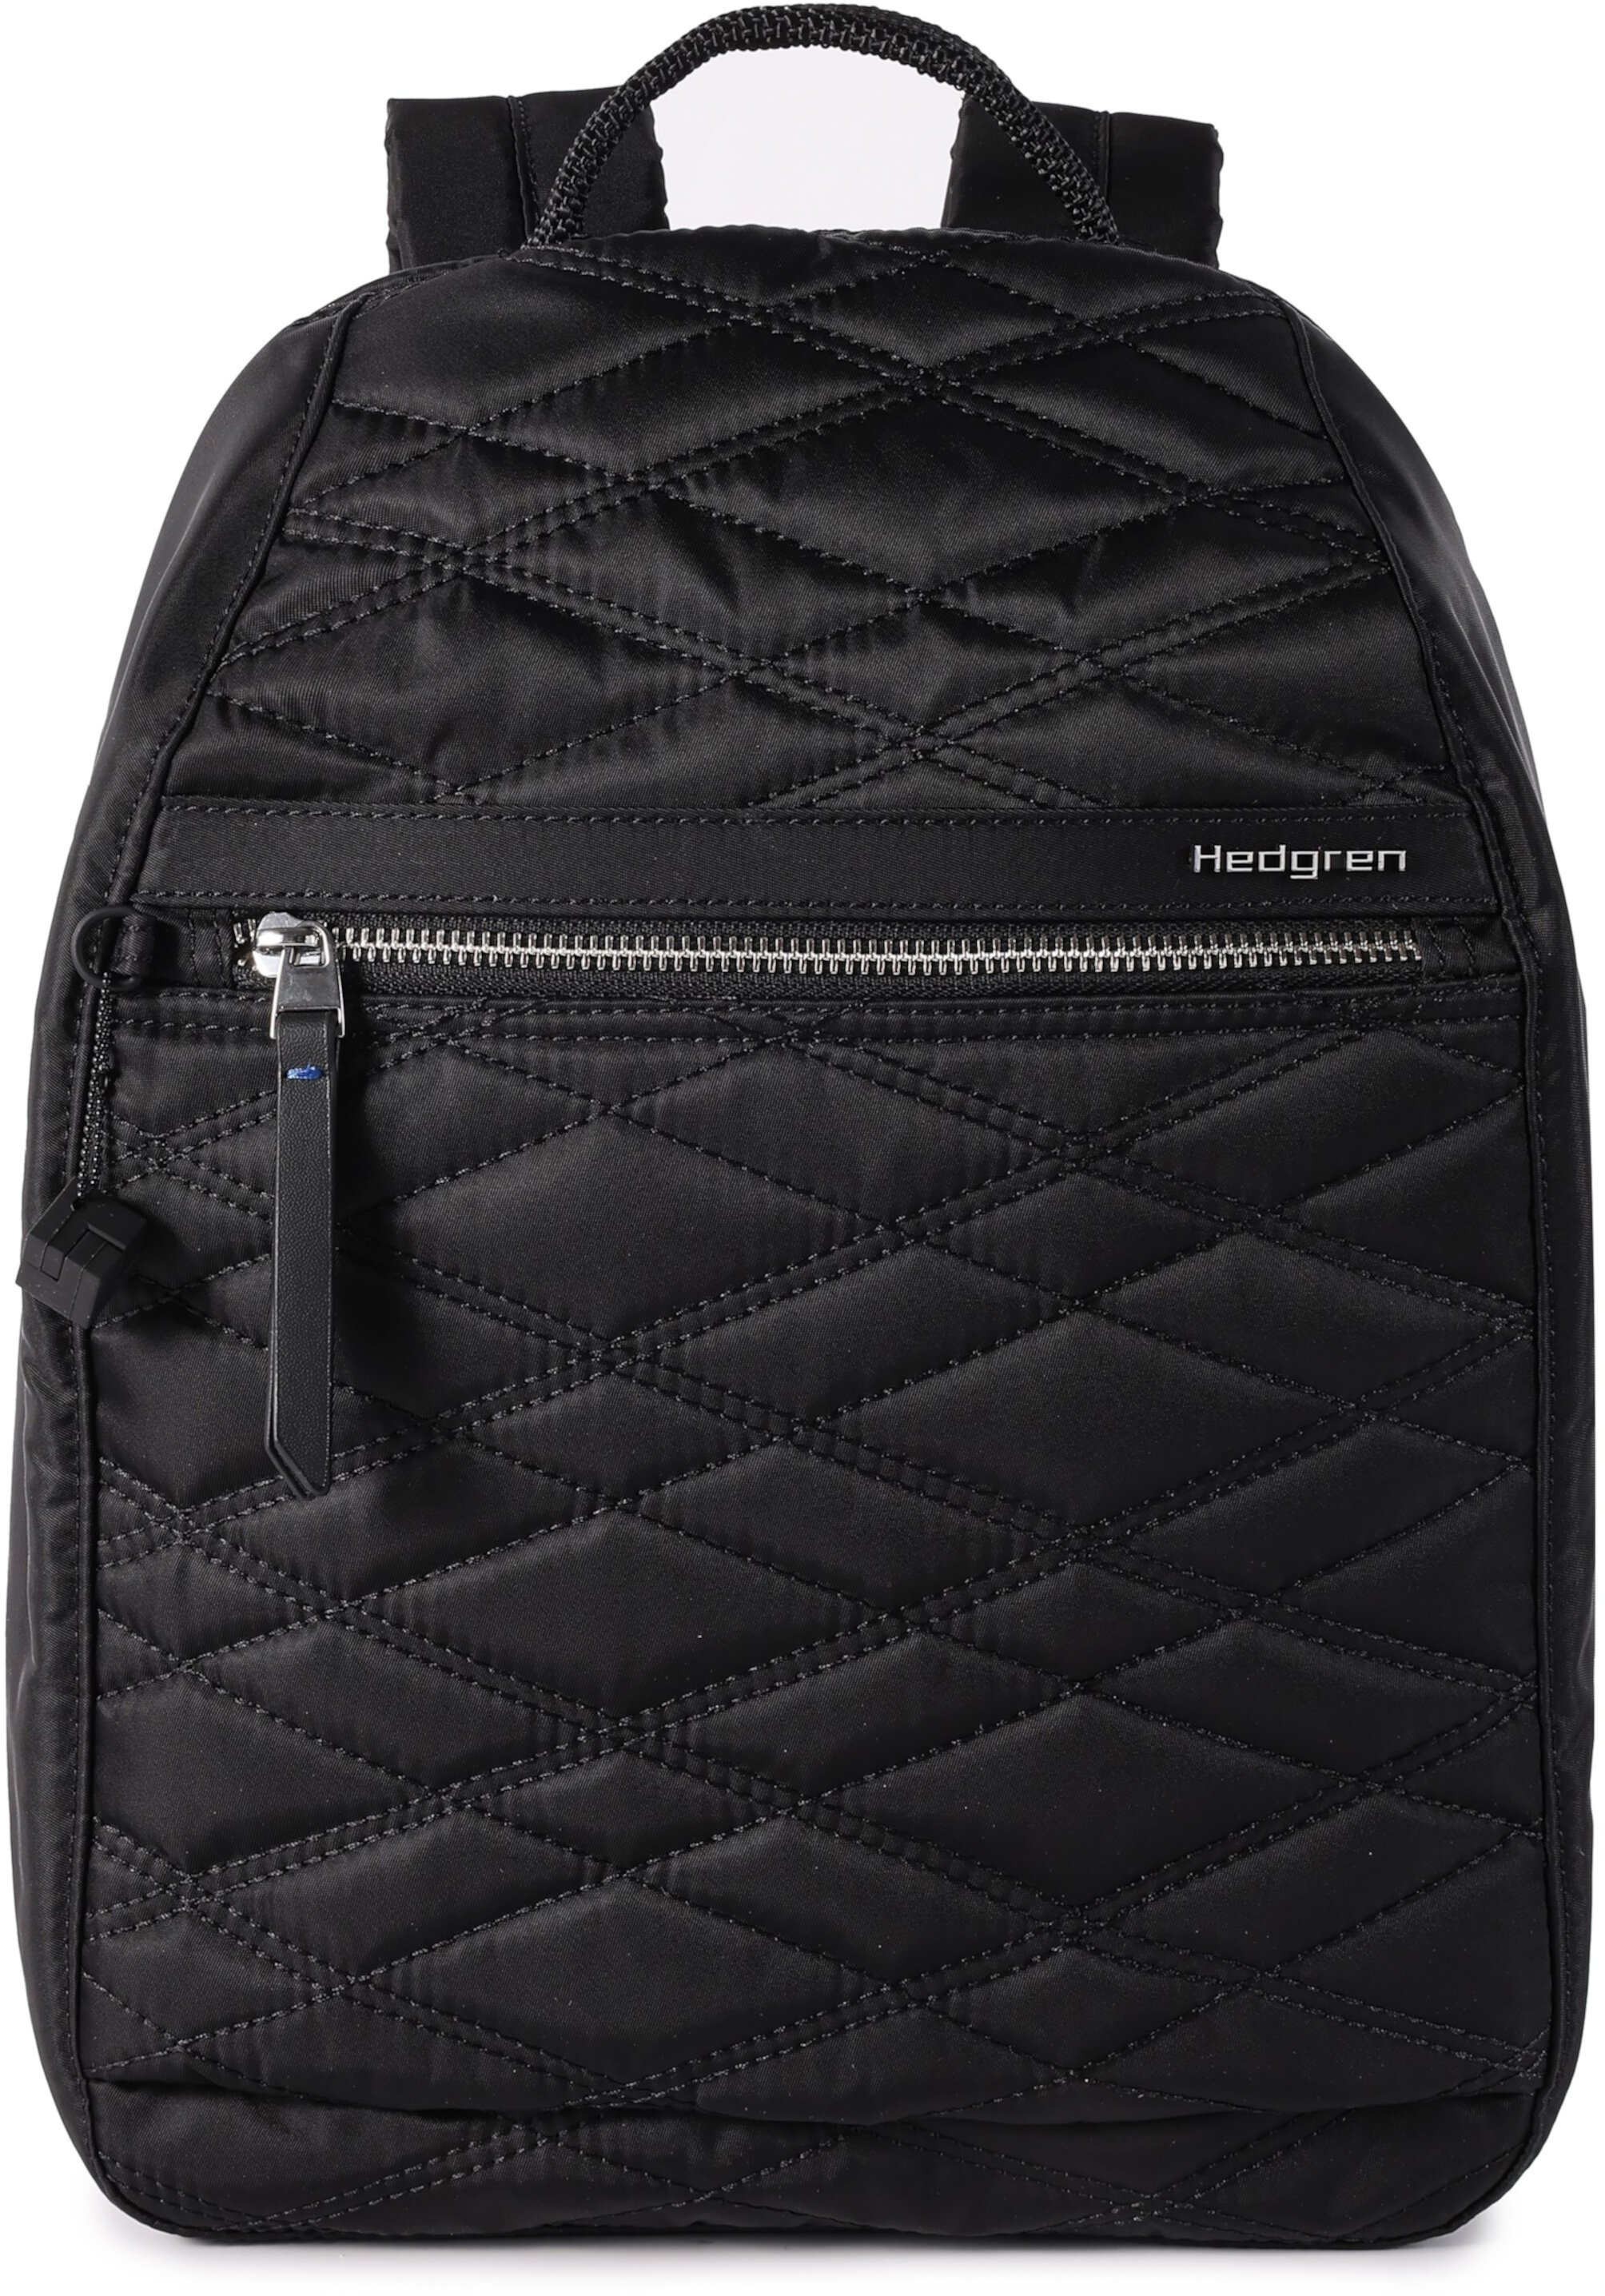 Большой рюкзак с RFID-меткой Vogue Hedgren